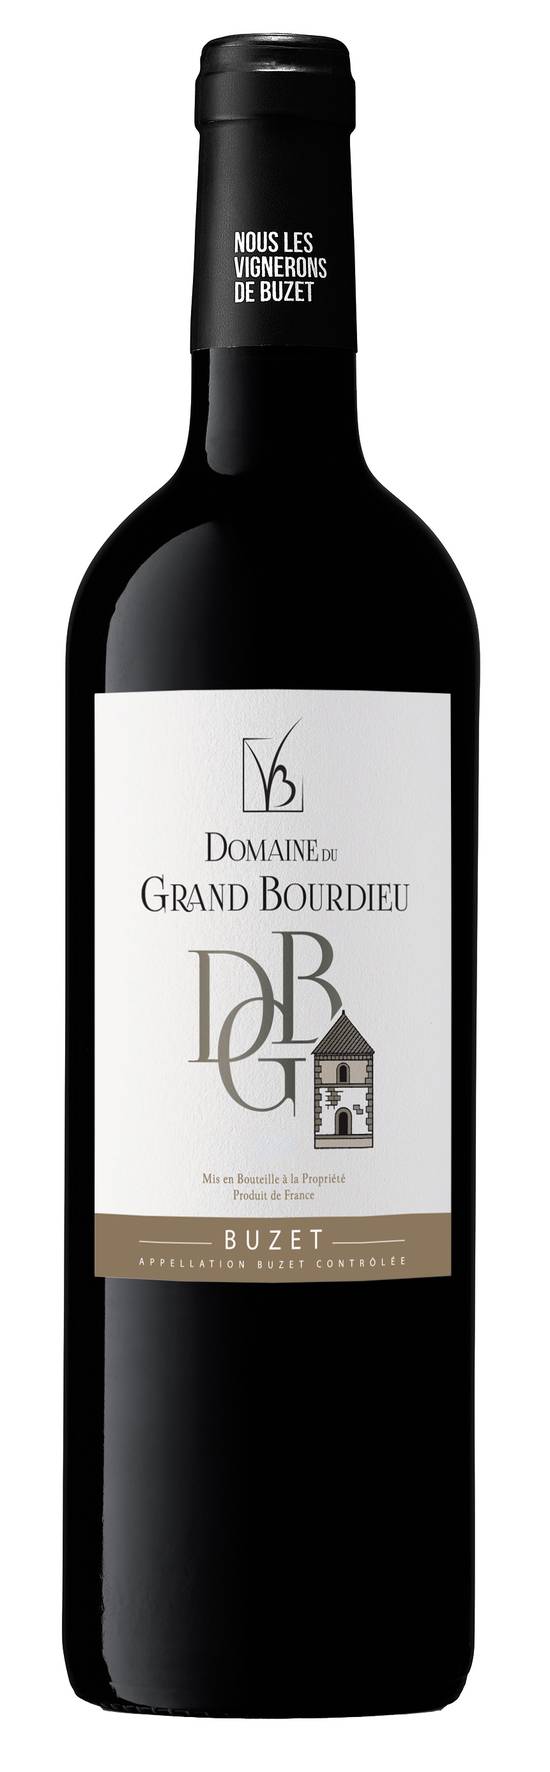 Domaine du Grand Bourdieu - Vin rouge AOC buzet domestique (750 ml)